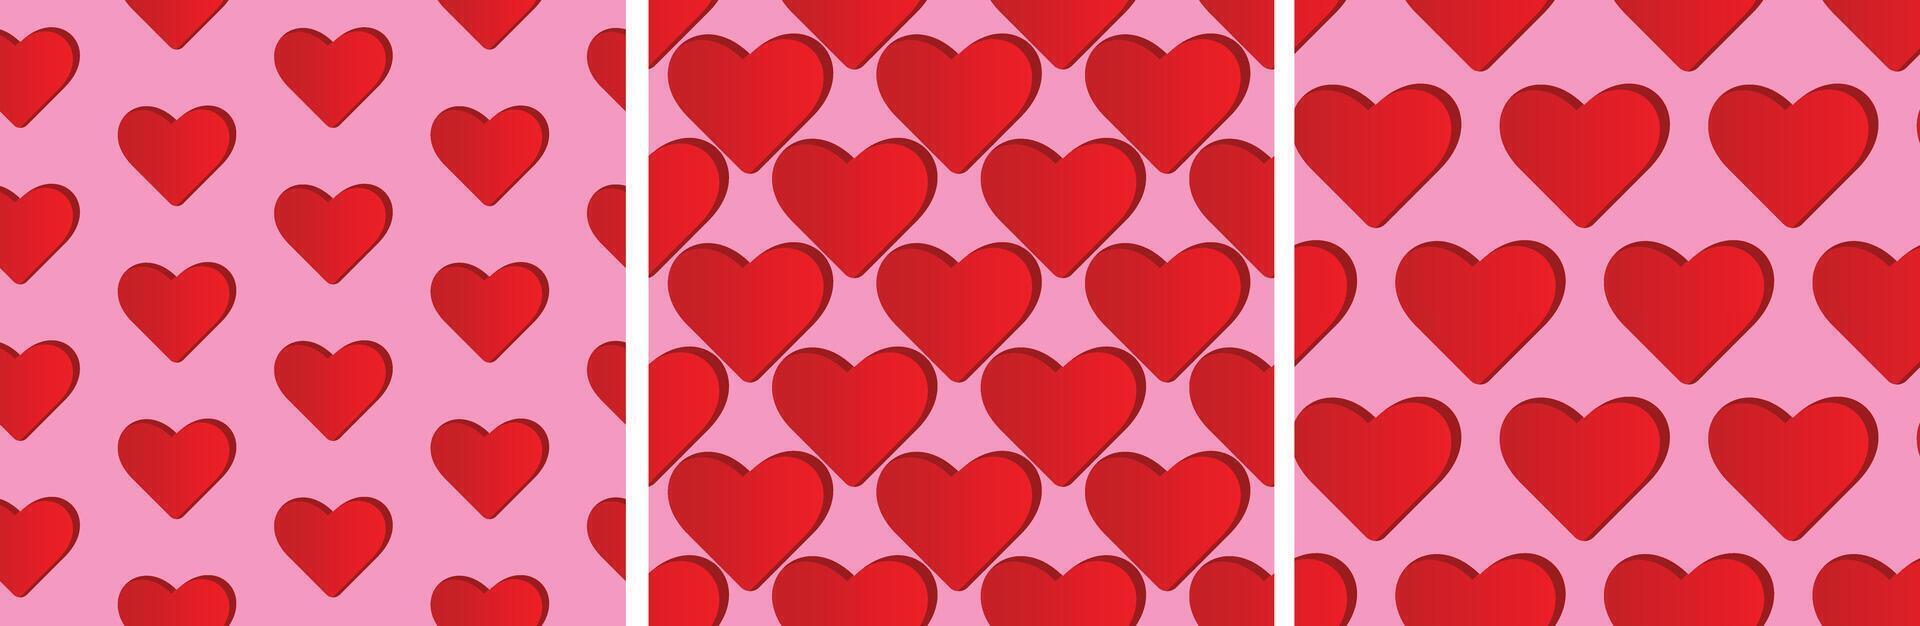 rood weinig harten patroon in roze romantisch achtergrond. afdrukken voor bruiloft achtergrond, valentijn, boekje, kaart. vector